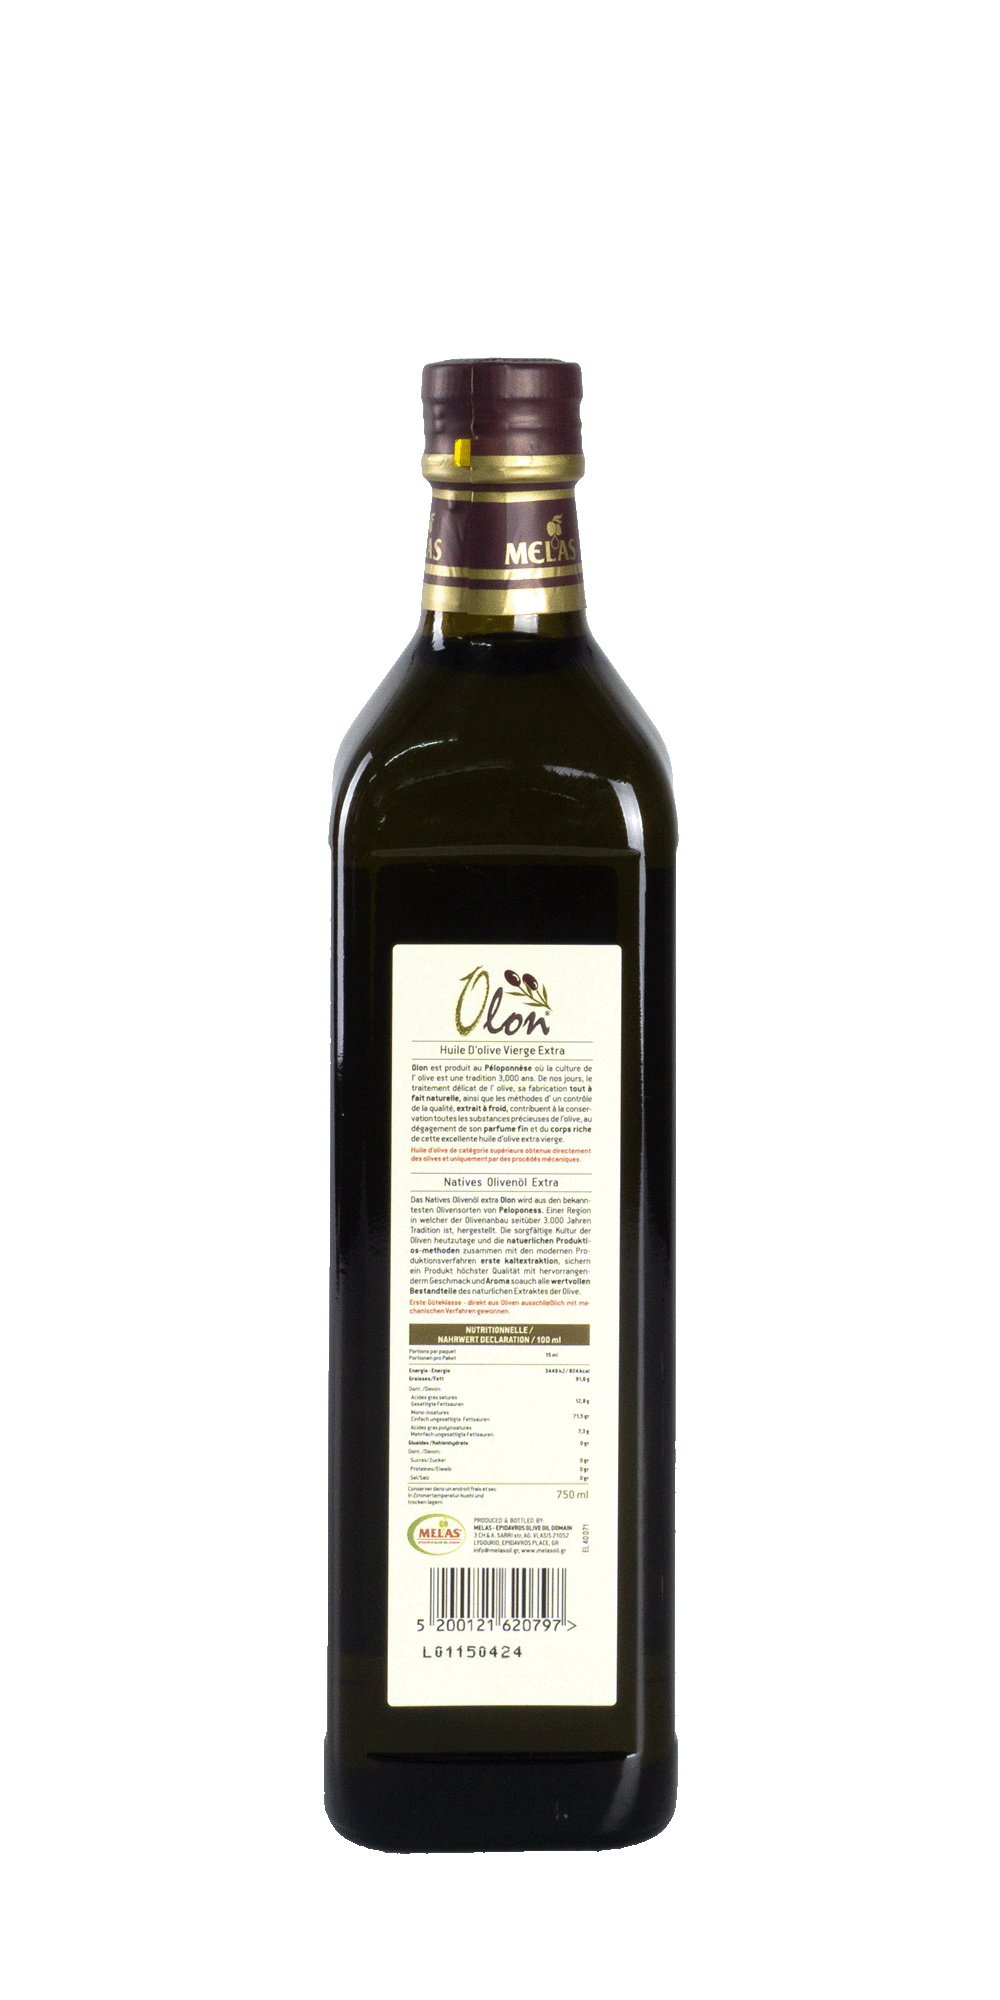 Melas Natives Olivenöl Extra Olon 0,75 l 